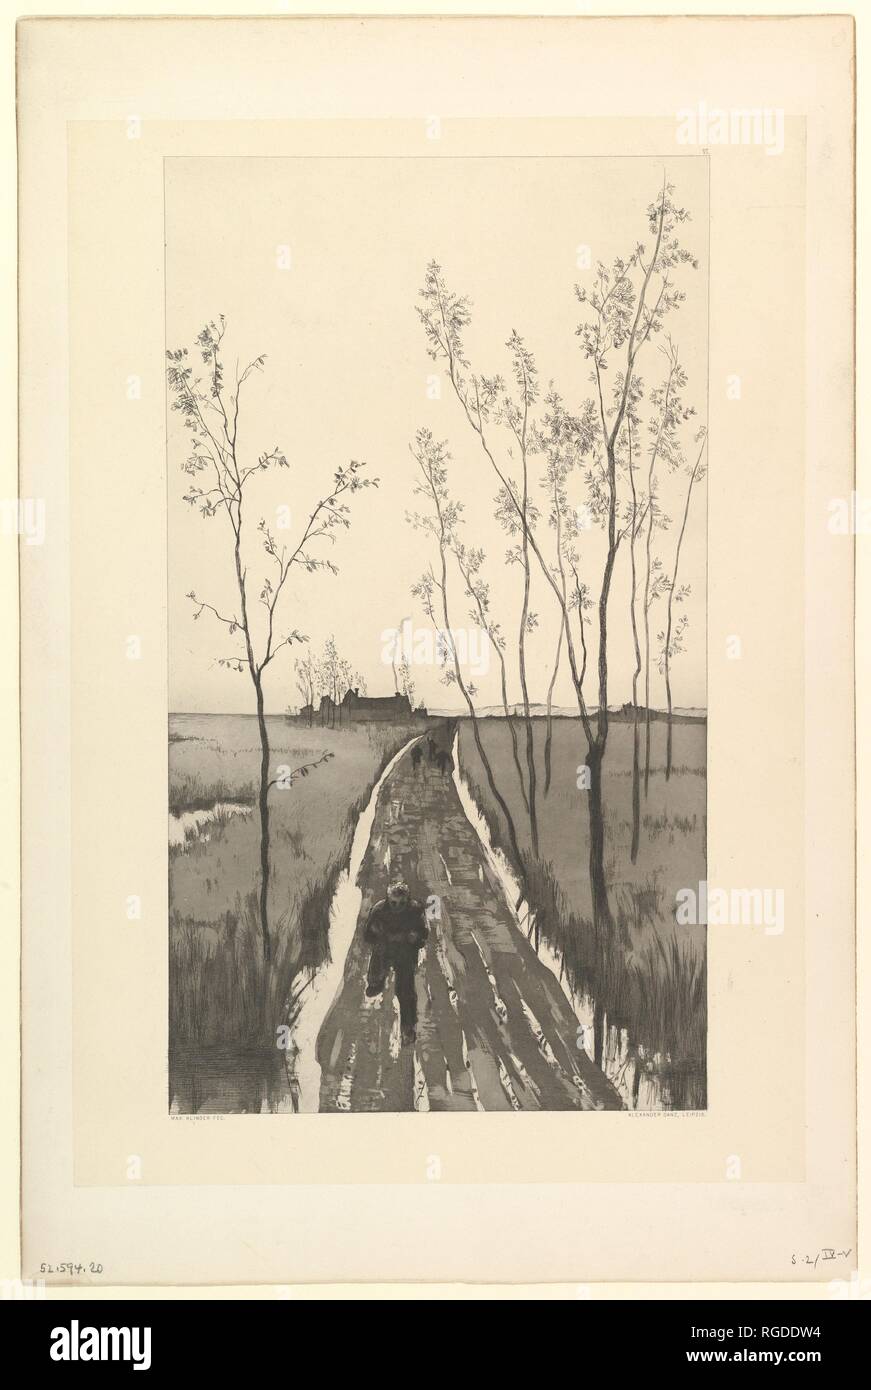 Verfolgung, from the series Radierte Skizzen. Artist: Max Klinger (German, Leipzig 1857-1920 Großjena). Dimensions: Plate: 15 15/16 × 11 1/8 in. (40.5 × 28.2 cm)  Sheet: 19 in. × 12 9/16 in. (48.2 × 31.9 cm). Date: n.d.. Museum: Metropolitan Museum of Art, New York, USA. Stock Photo